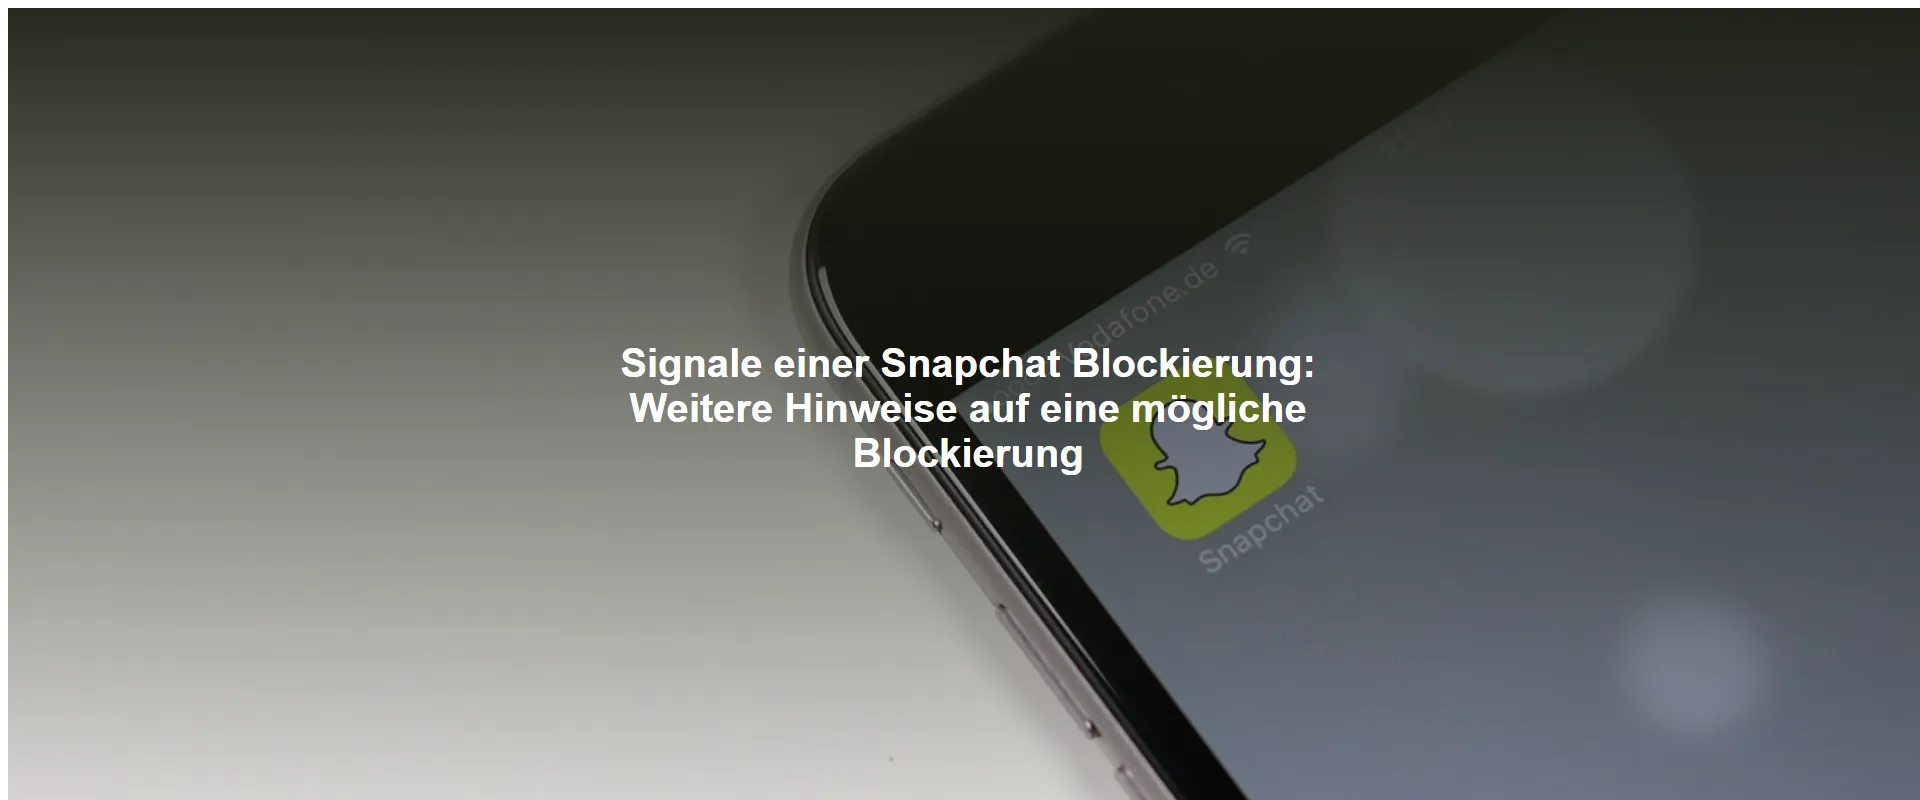 Signale einer Snapchat Blockierung: Weitere Hinweise auf eine mögliche Blockierung